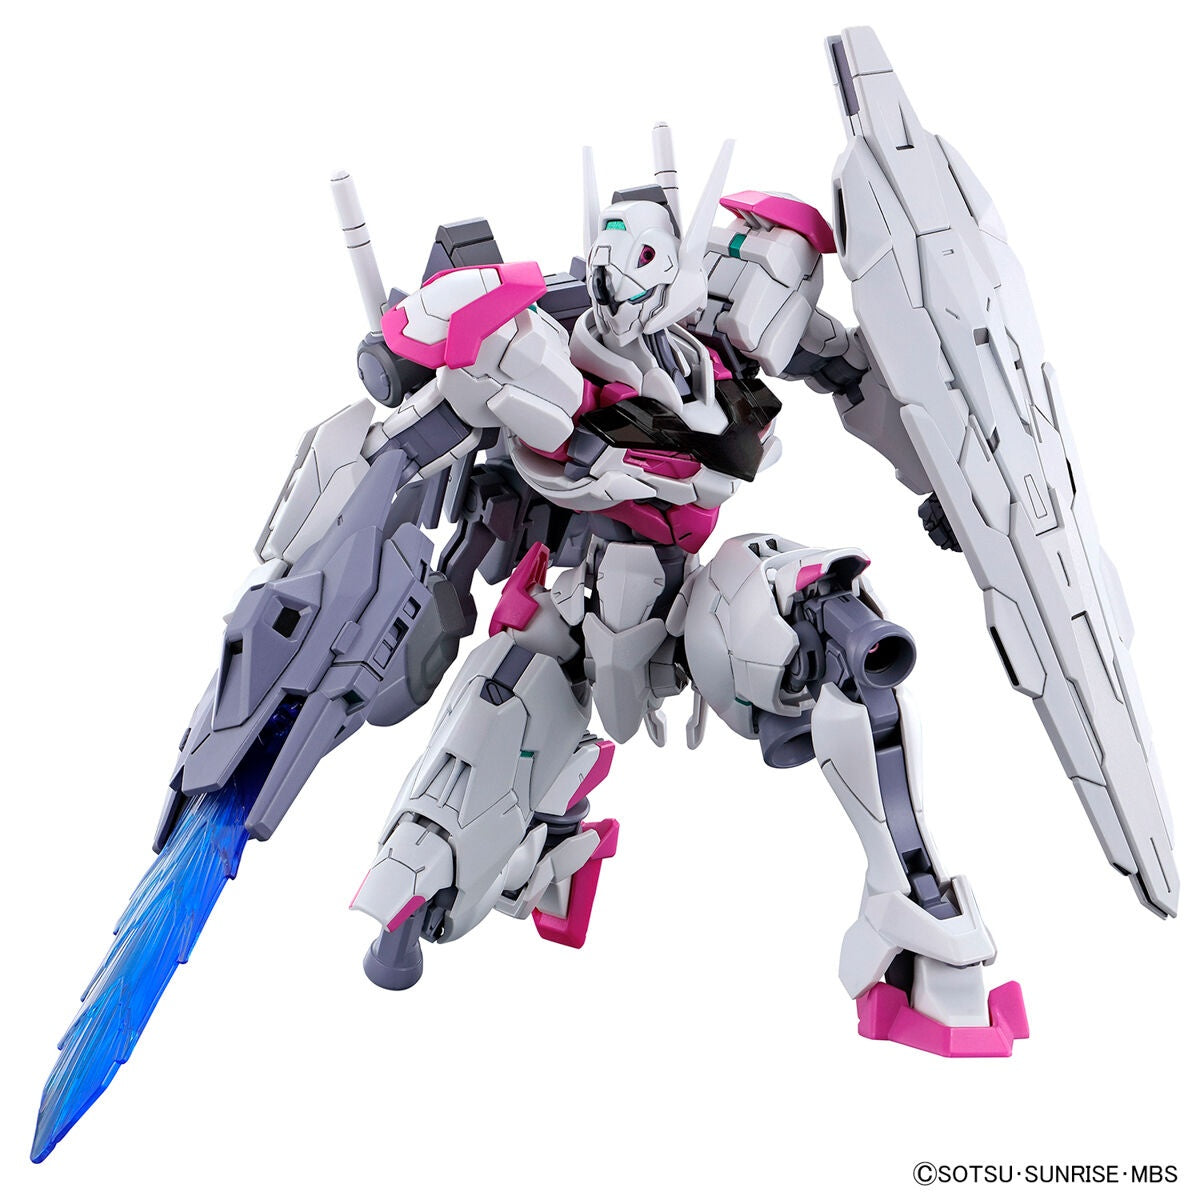 HGTWFM - XGF-02 Gundam Lfrith